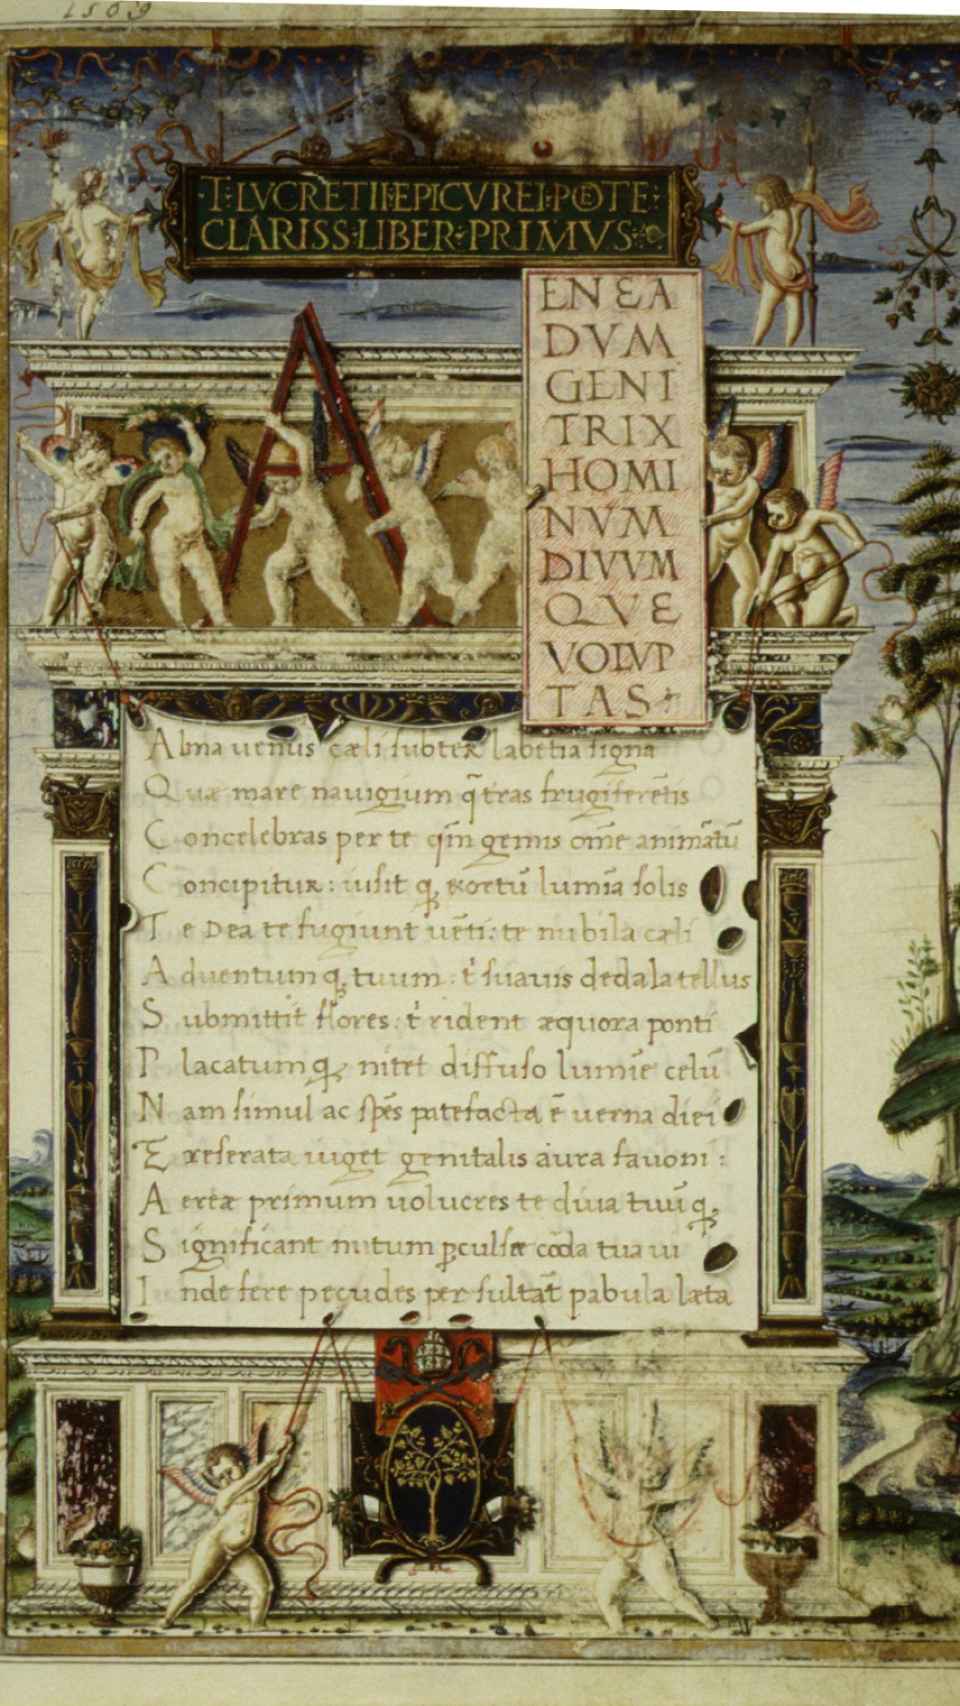 Frontispicio de una copia de De rerum natura escrito por un fraile agustino para el papa Sixto IV, c. 1483.